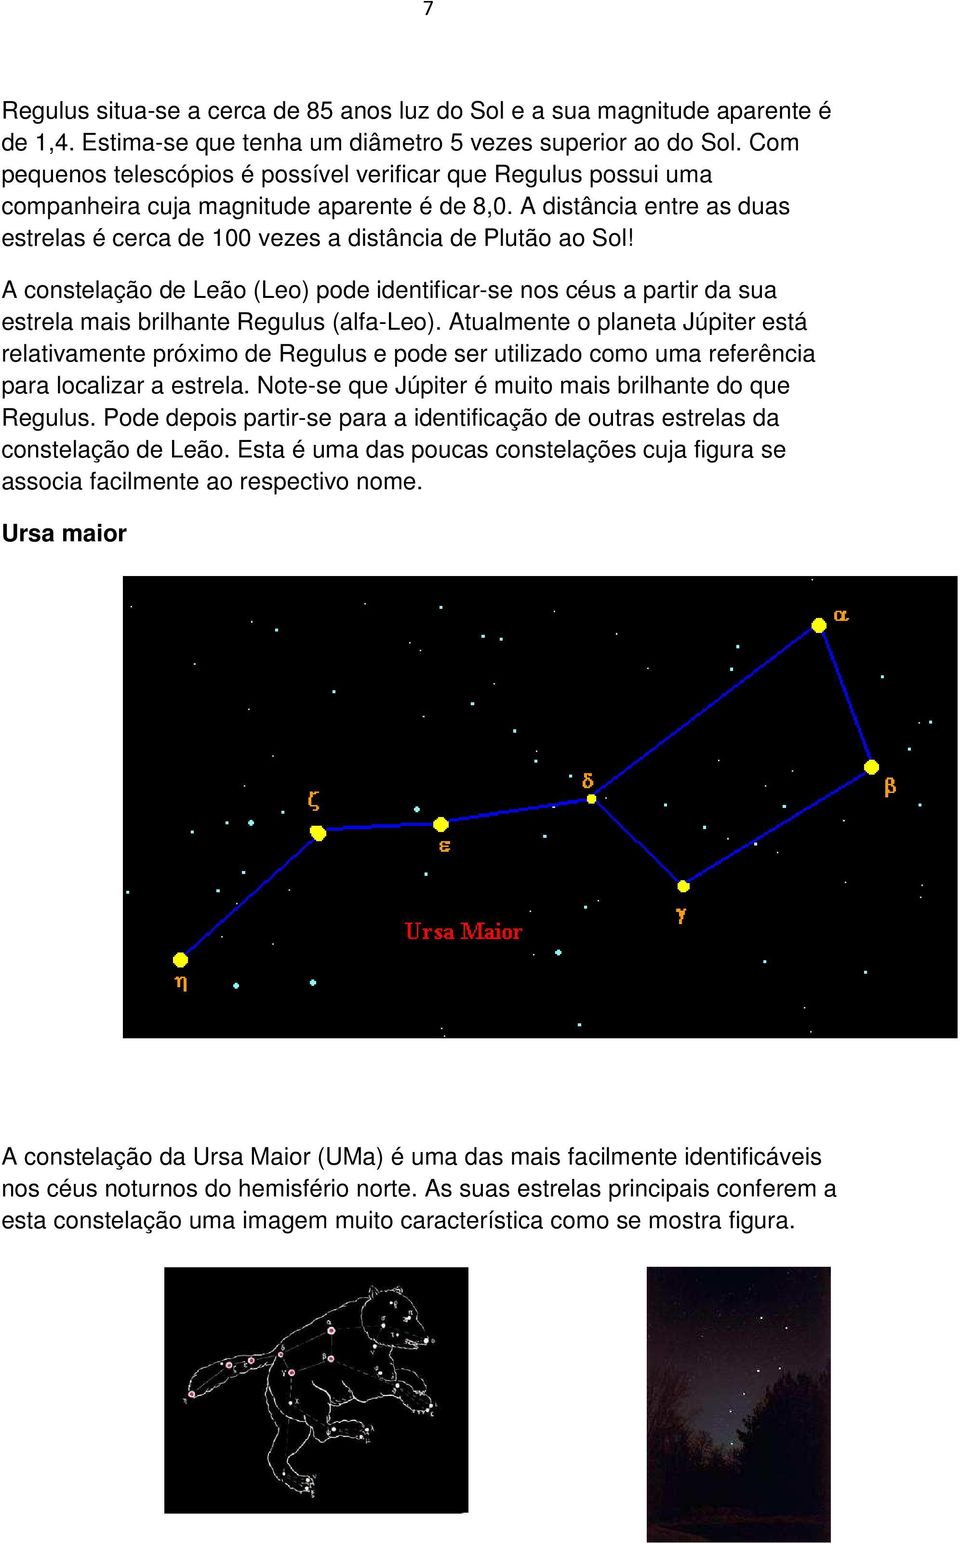 A constelação de Leão (Leo) pode identificar-se nos céus a partir da sua estrela mais brilhante Regulus (alfa-leo).